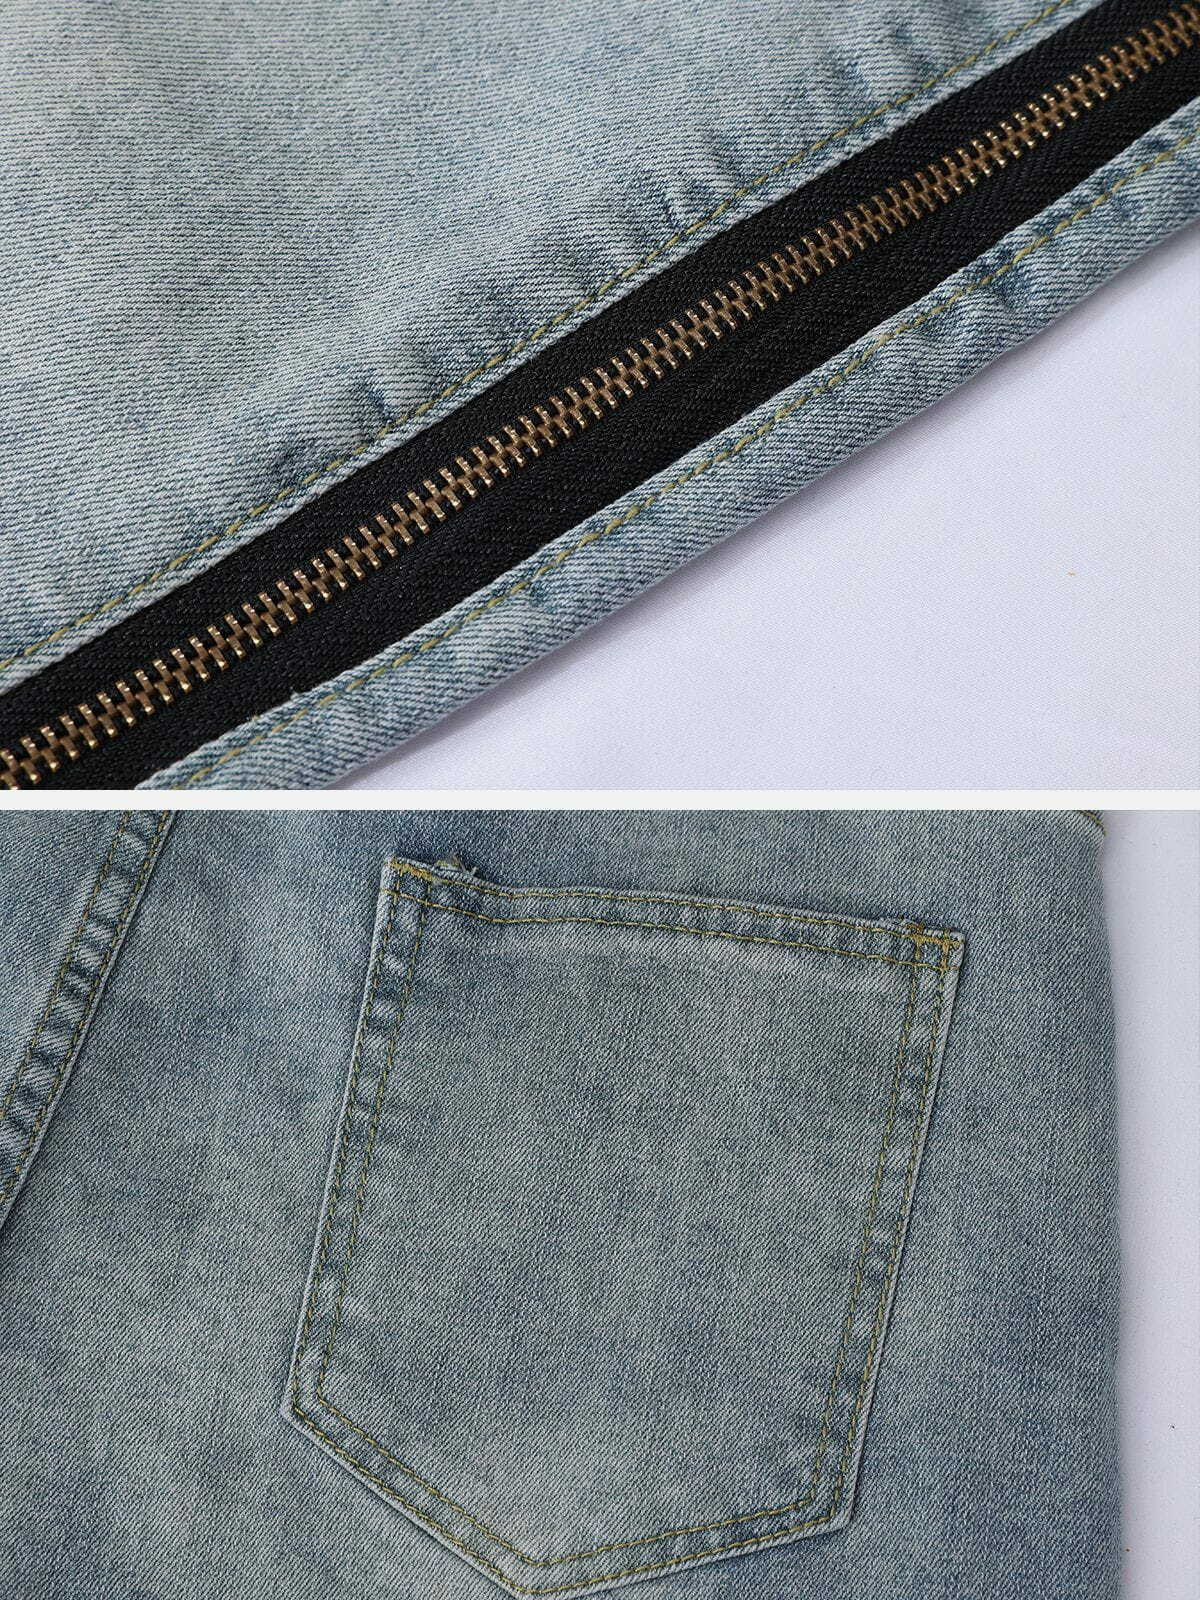 distressed zip jeans edgy & vintage streetwear 3675